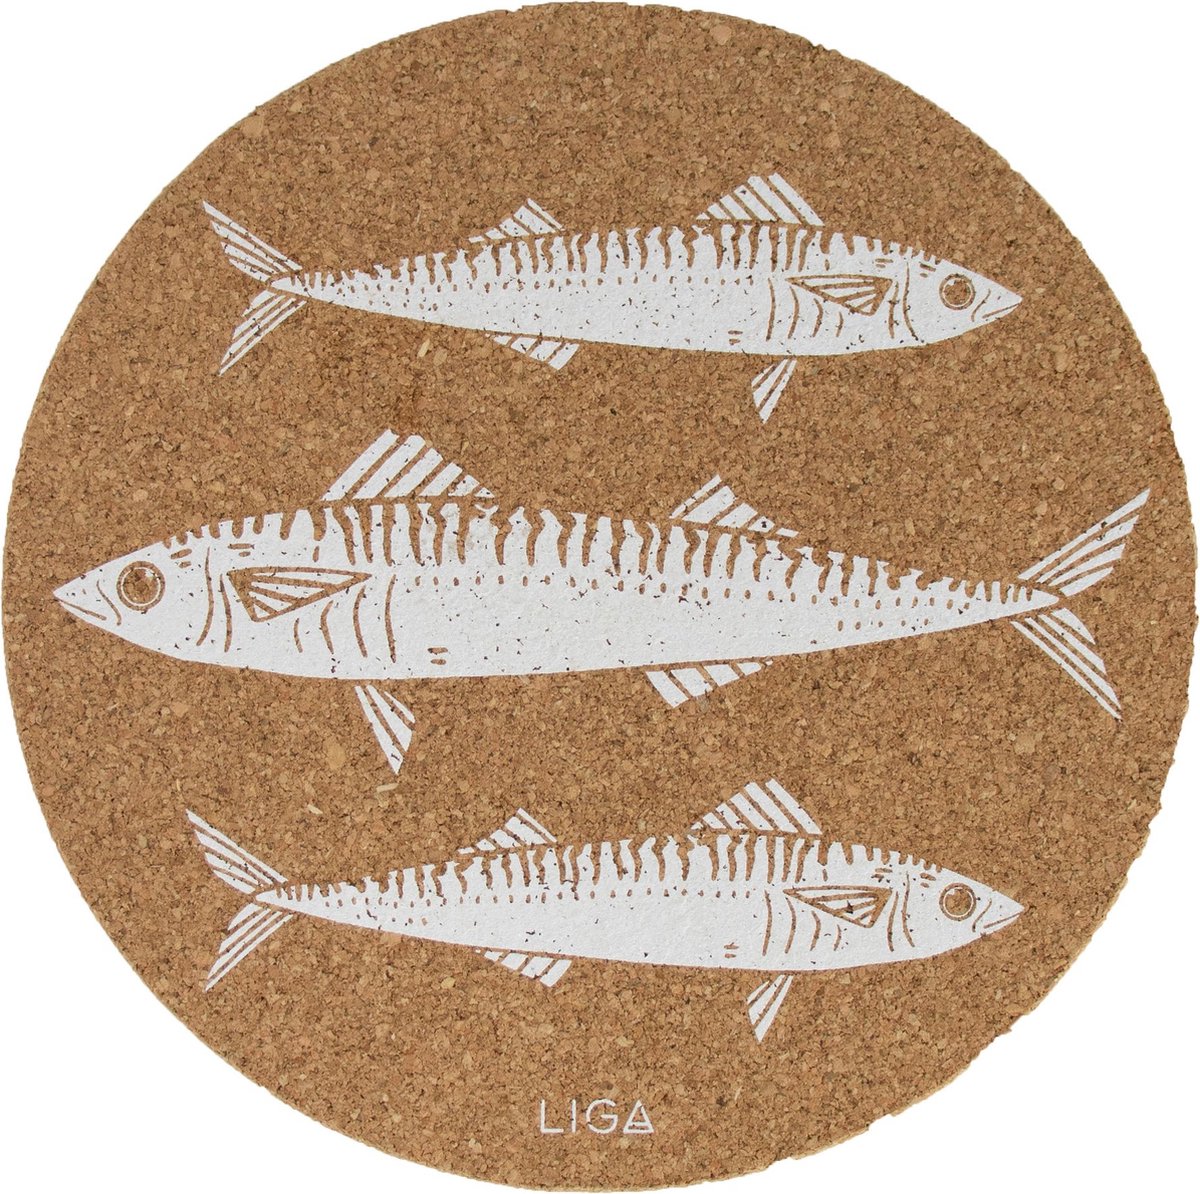 LIGA - Placemat Makreel Set van 4 Stuks - Kurk - Beige